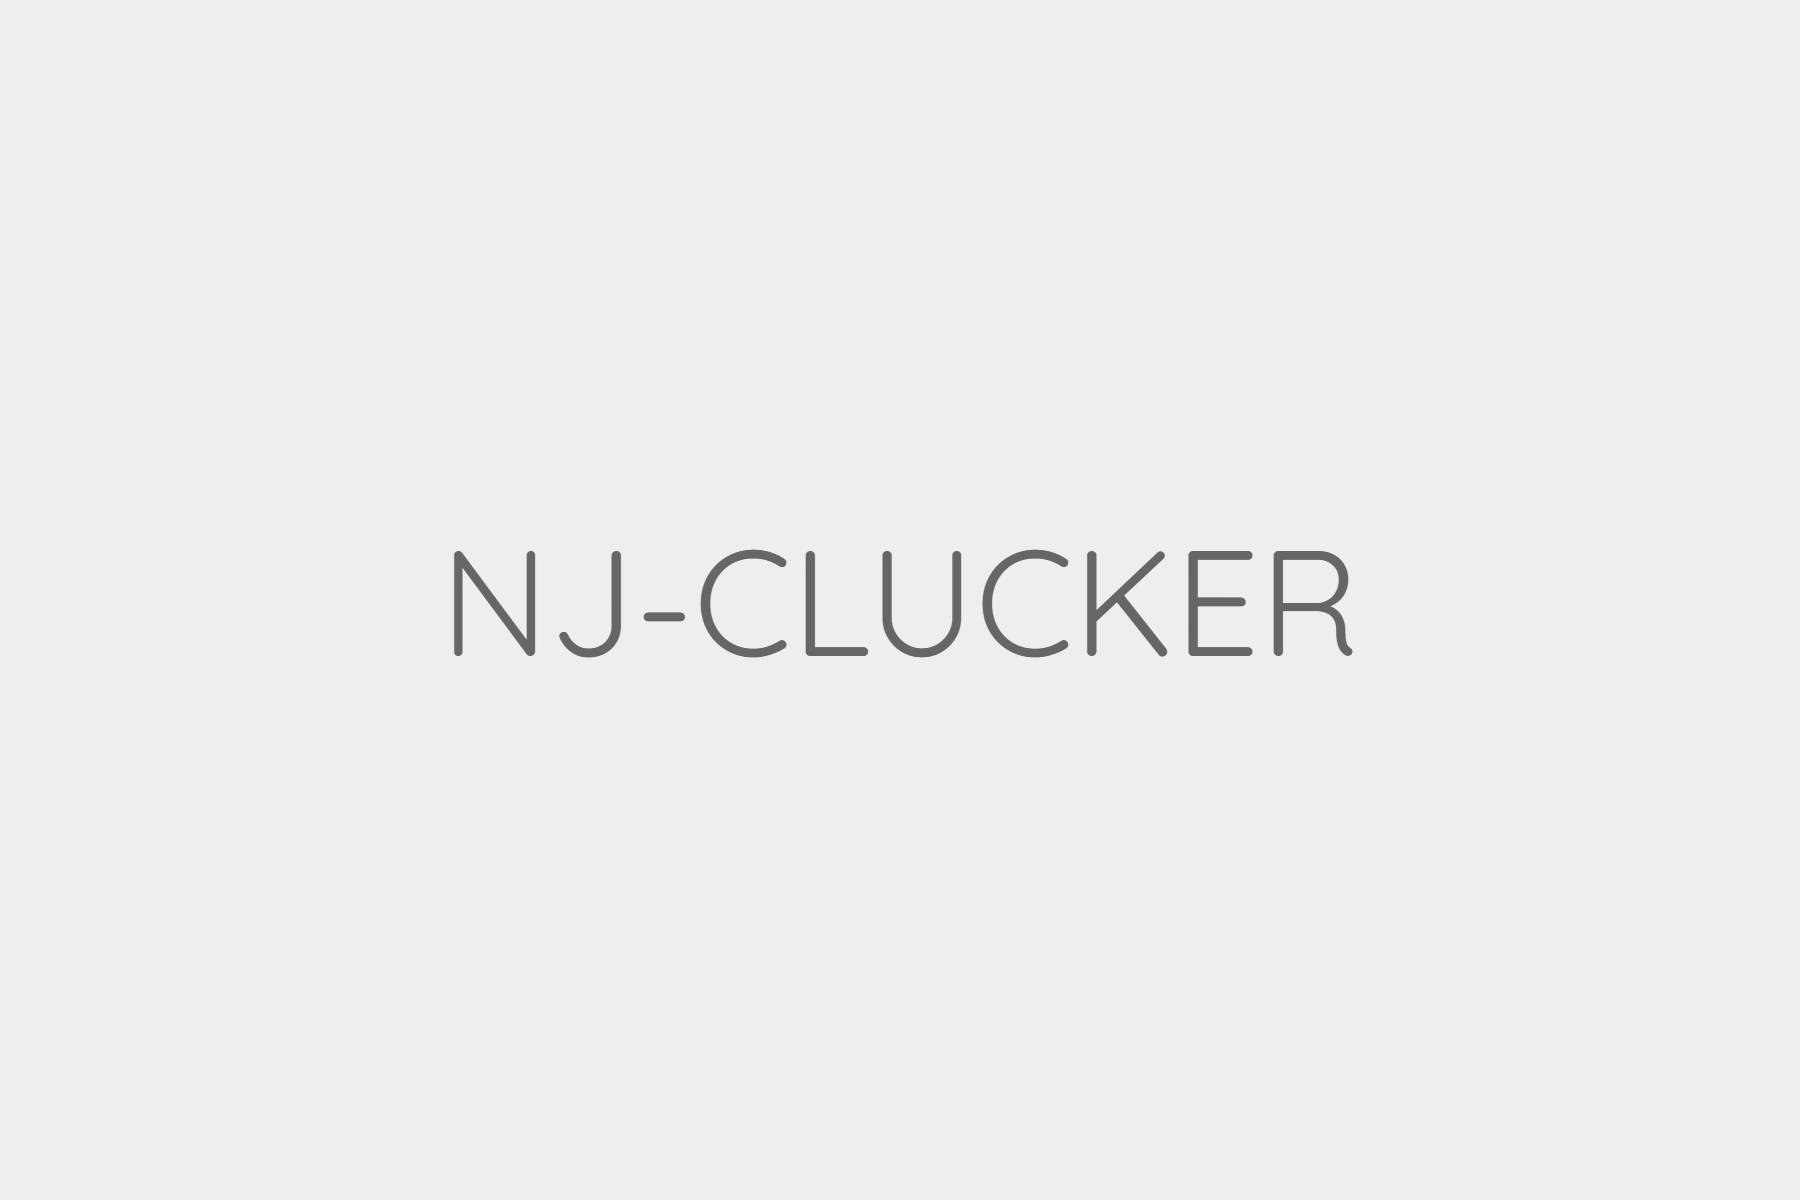 NJ-CLUCKER